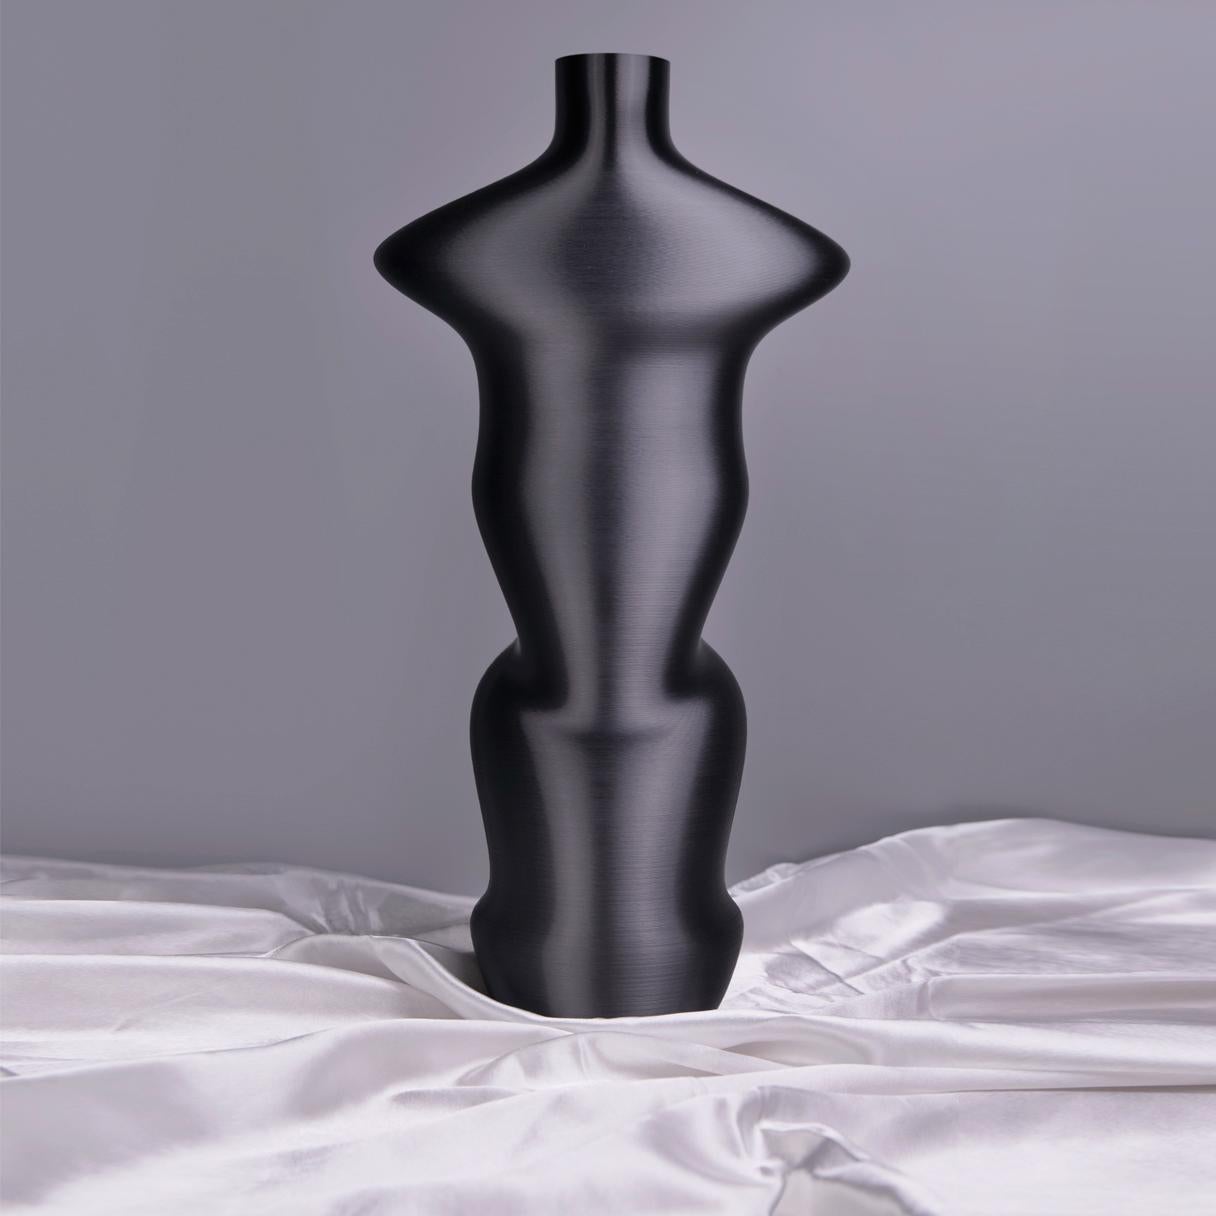 Vase-sculpture de DygoDesign.

Un vase au design singulier ; Ces sculptures sont inspirées d'un conte mythologique oriental dont on se souvient lors de la 